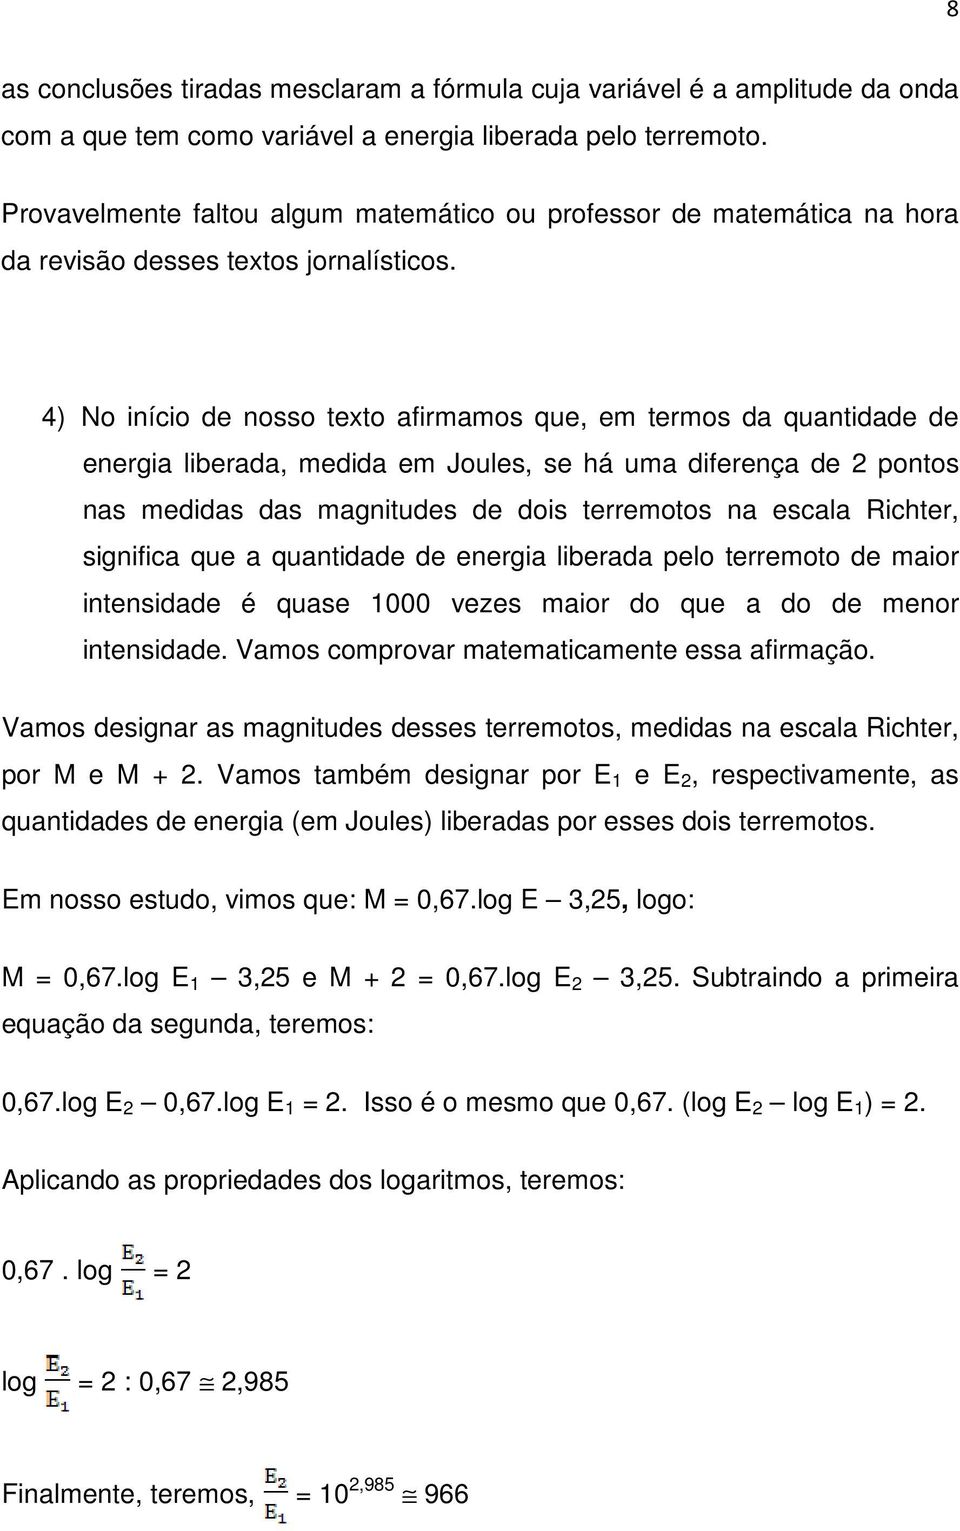 4) No início de nosso texto afirmamos que, em termos da quantidade de energia liberada, medida em Joules, se há uma diferença de 2 pontos nas medidas das magnitudes de dois terremotos na escala